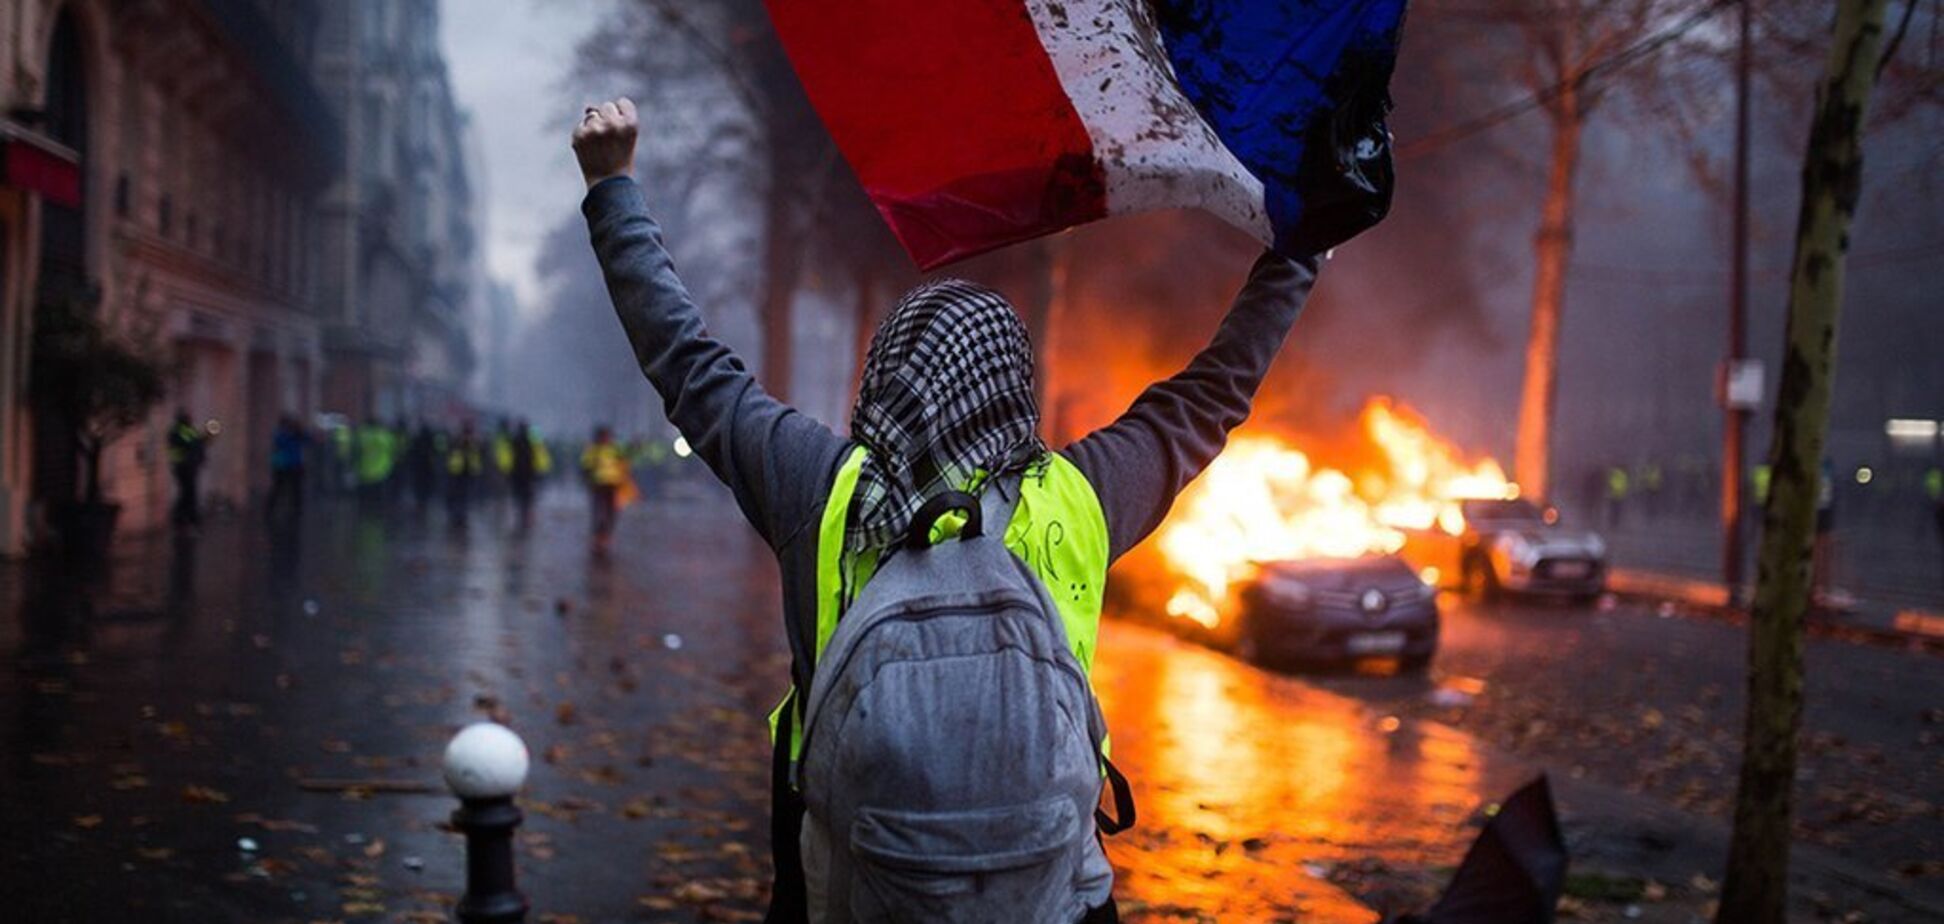   Упрекнул Макрона: Трамп едко высказался о протестах во Франции